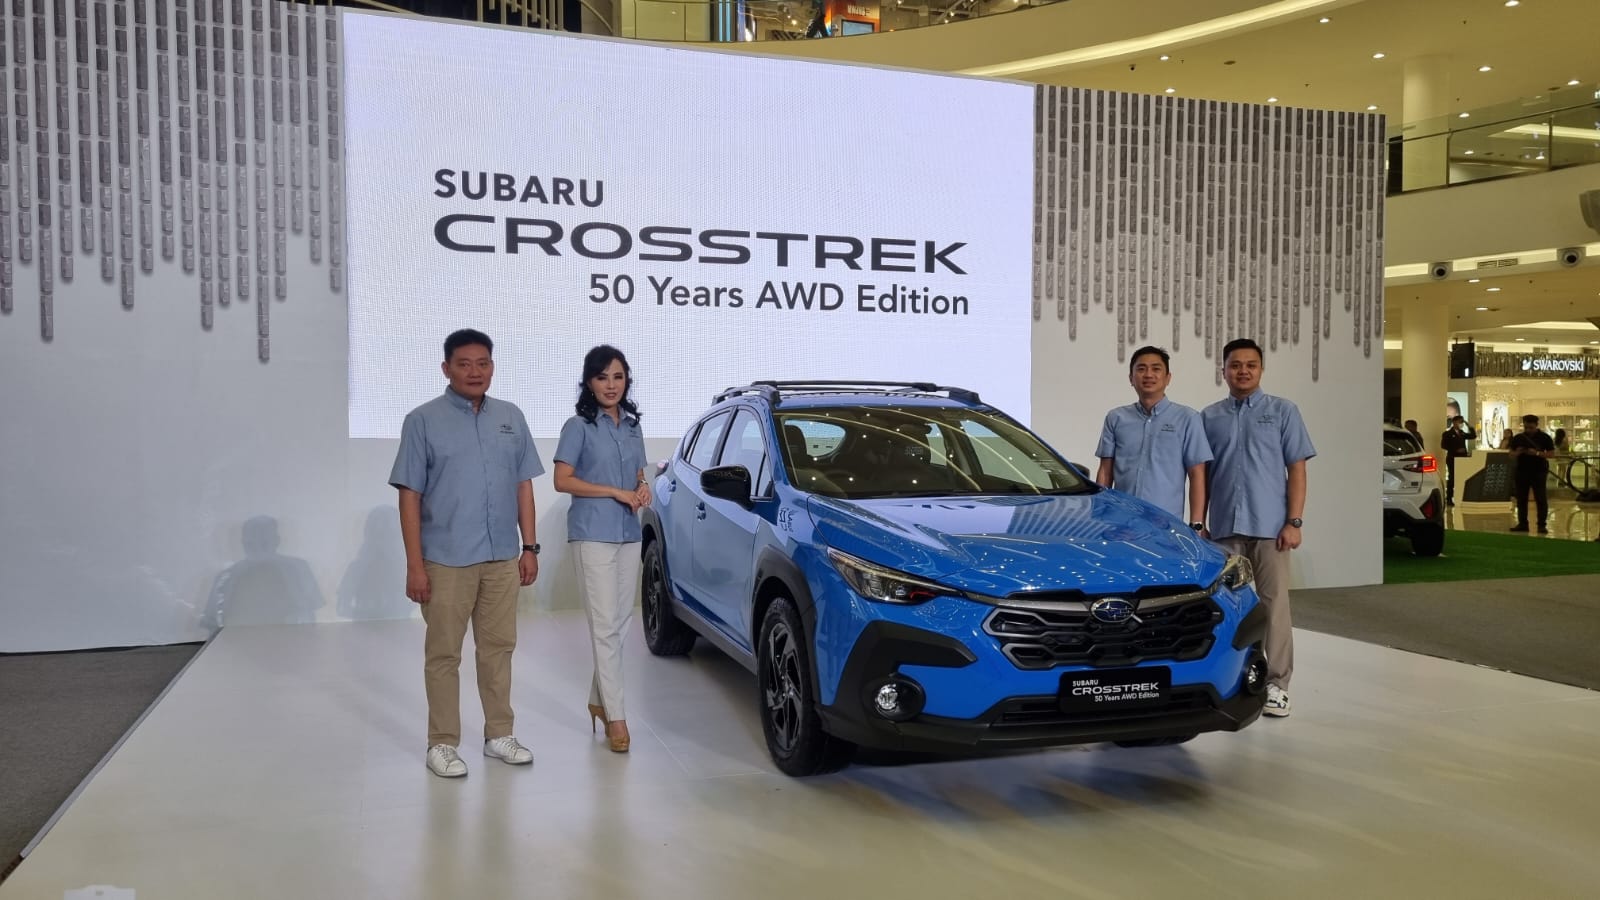 Rayakan 50 Tahun AWD, Subaru Luncurkan Crosstrek Edisi Spesial